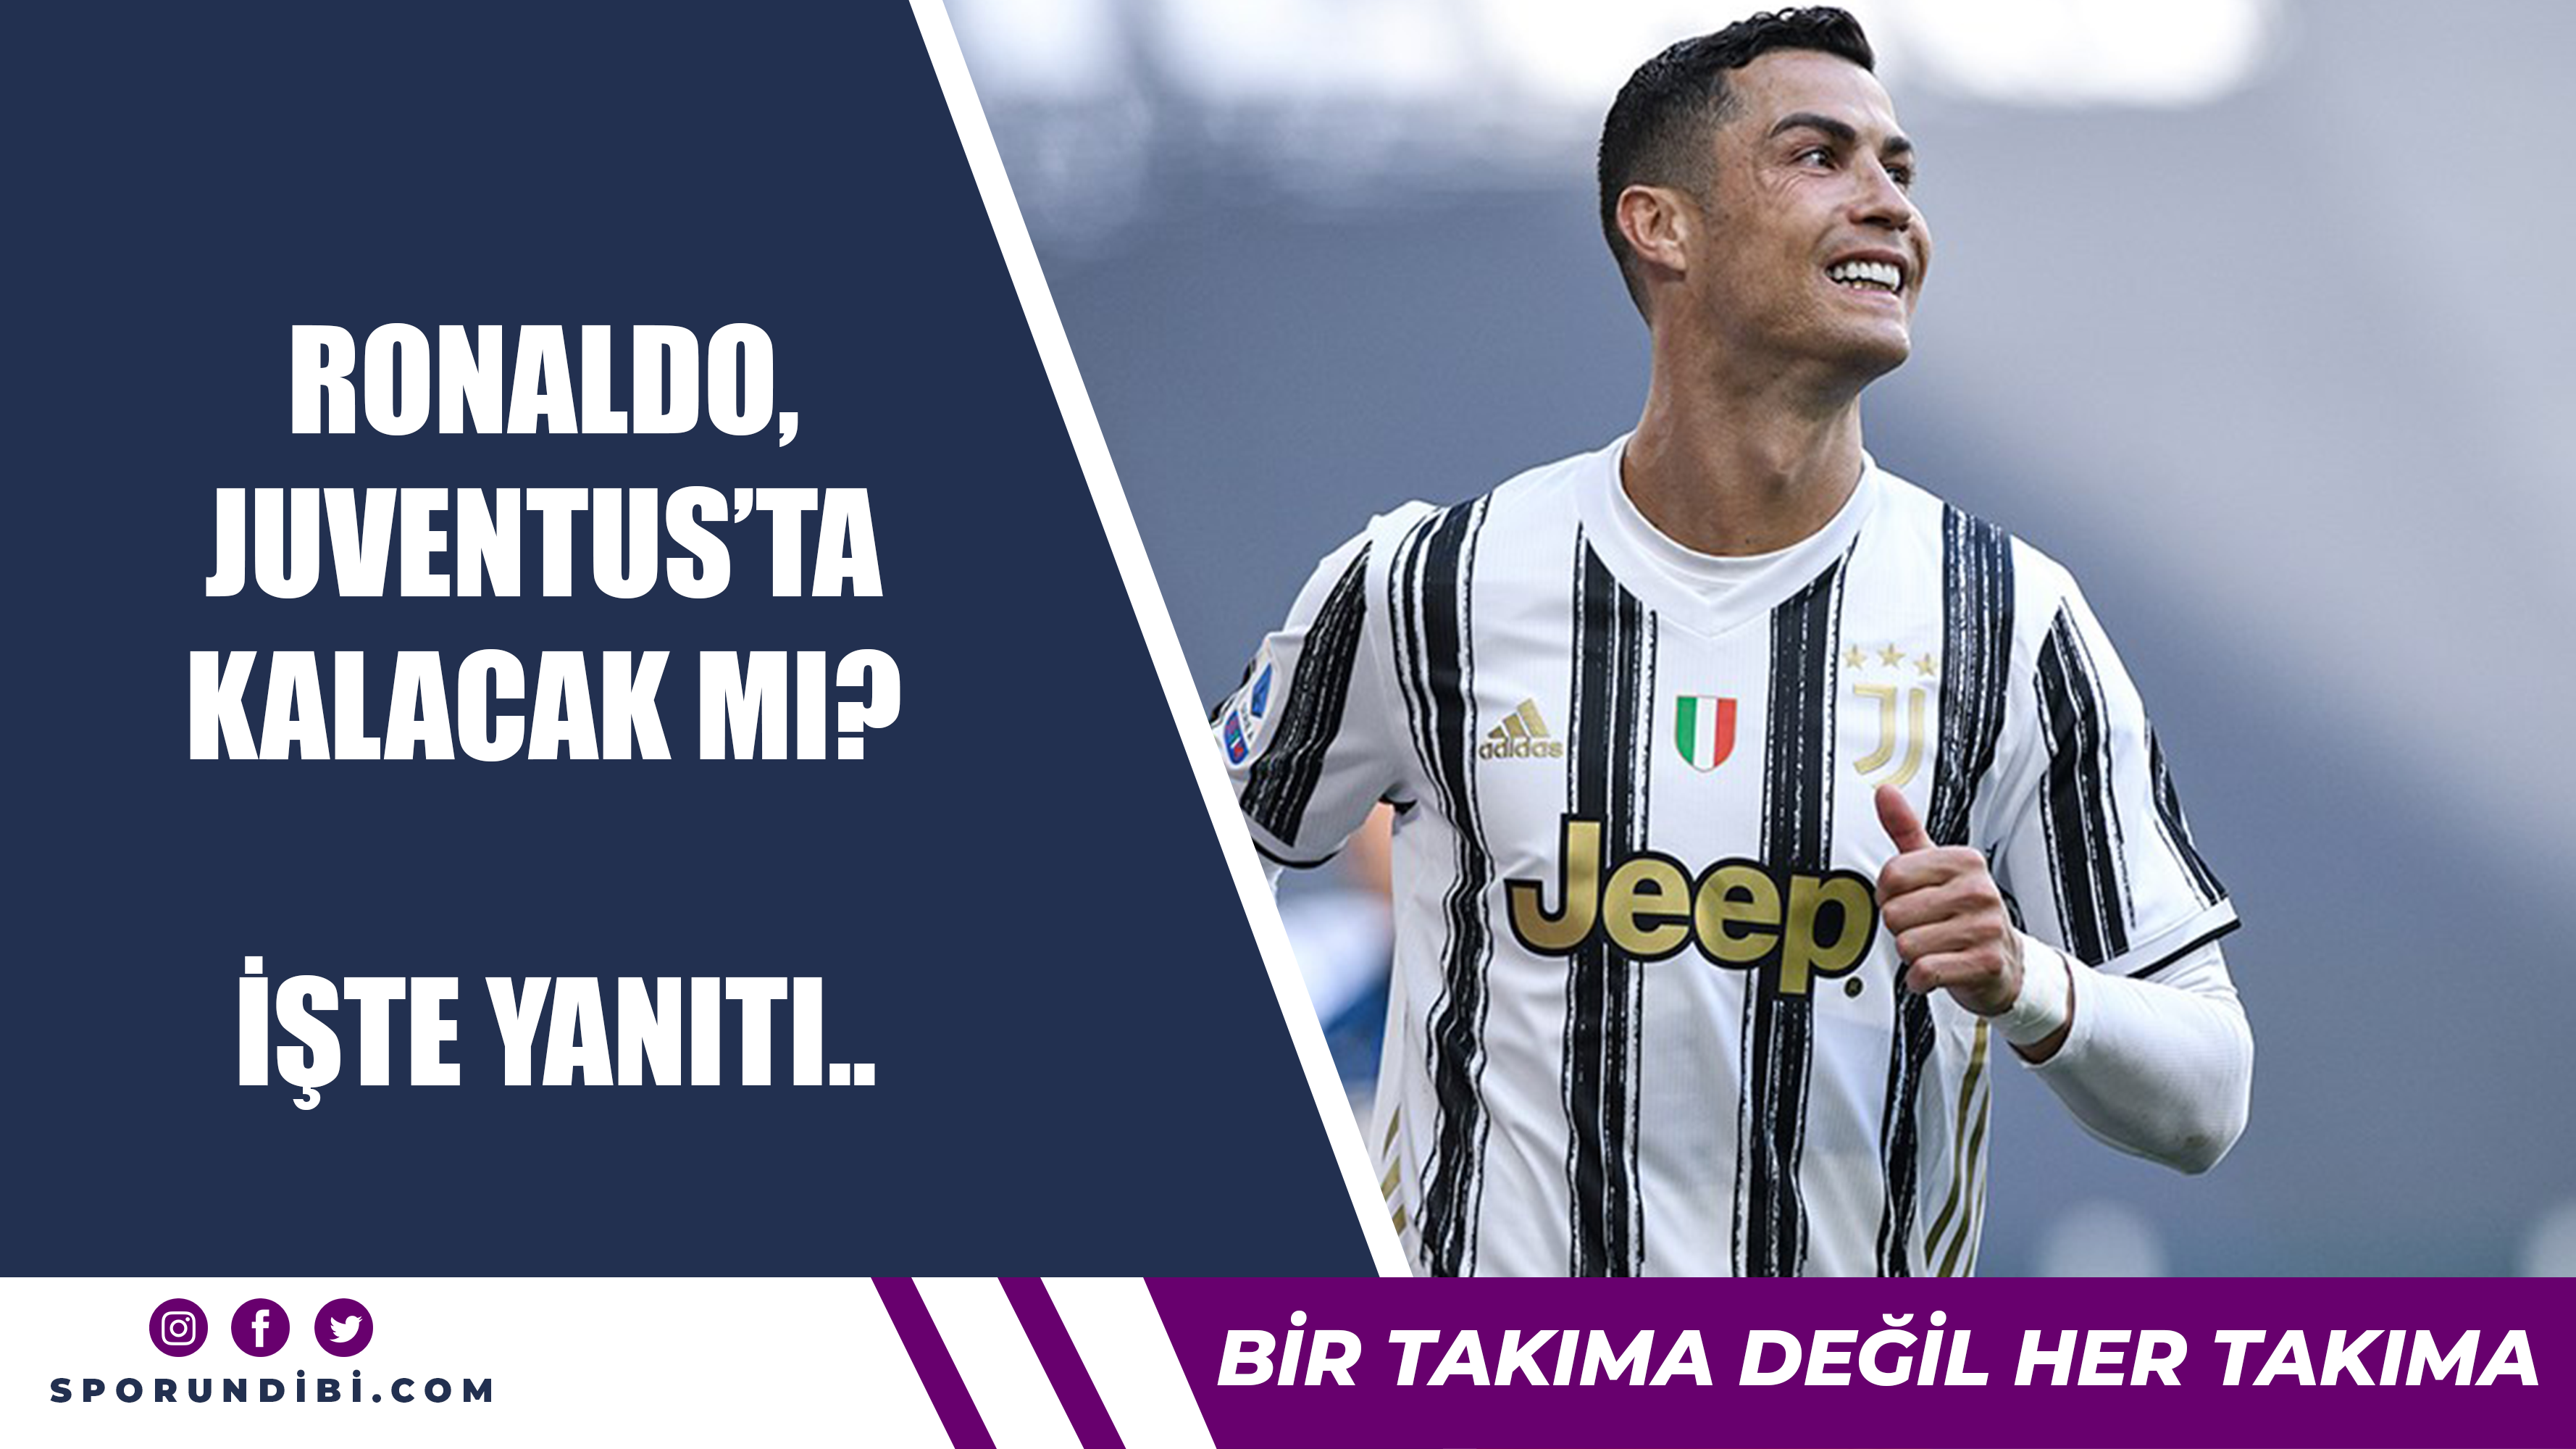 Ronaldo, Juventus'ta kalacak mı? İşte yanıtı...